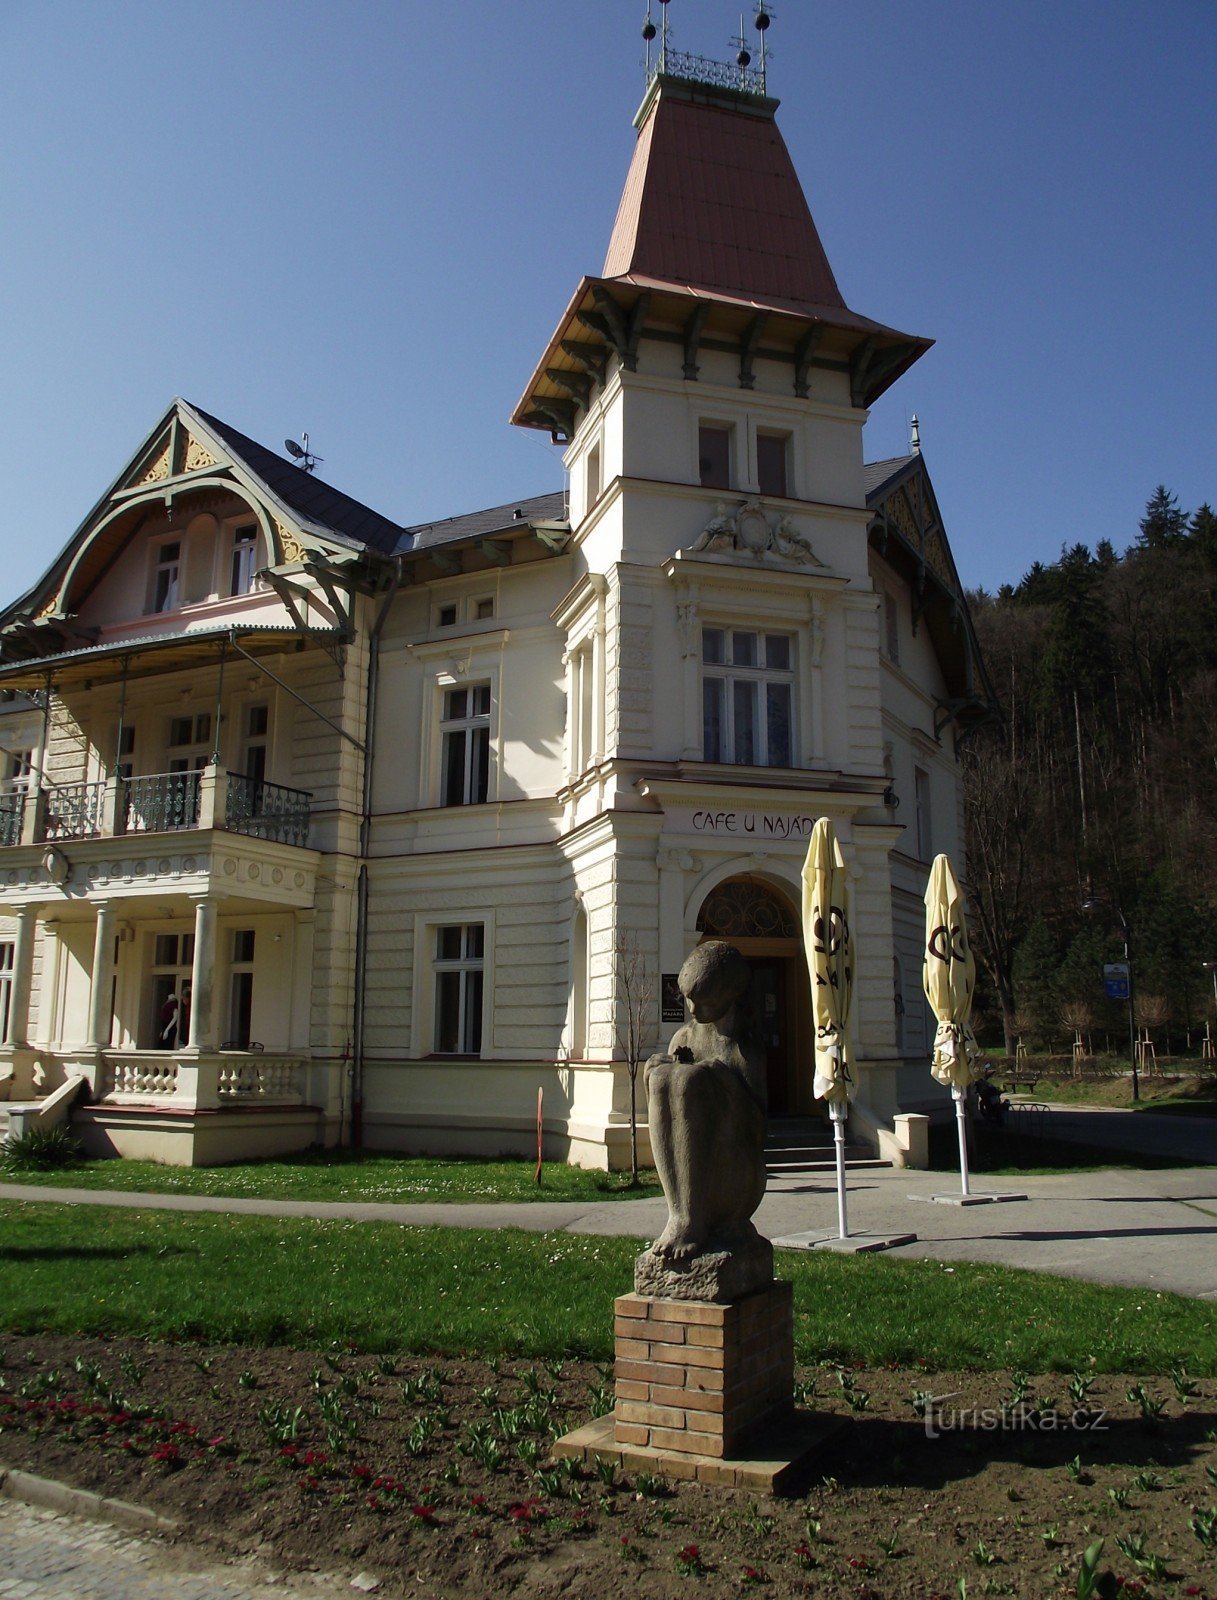 Luhačovice - Vila s lékárnou (vila Austria, U Najády)